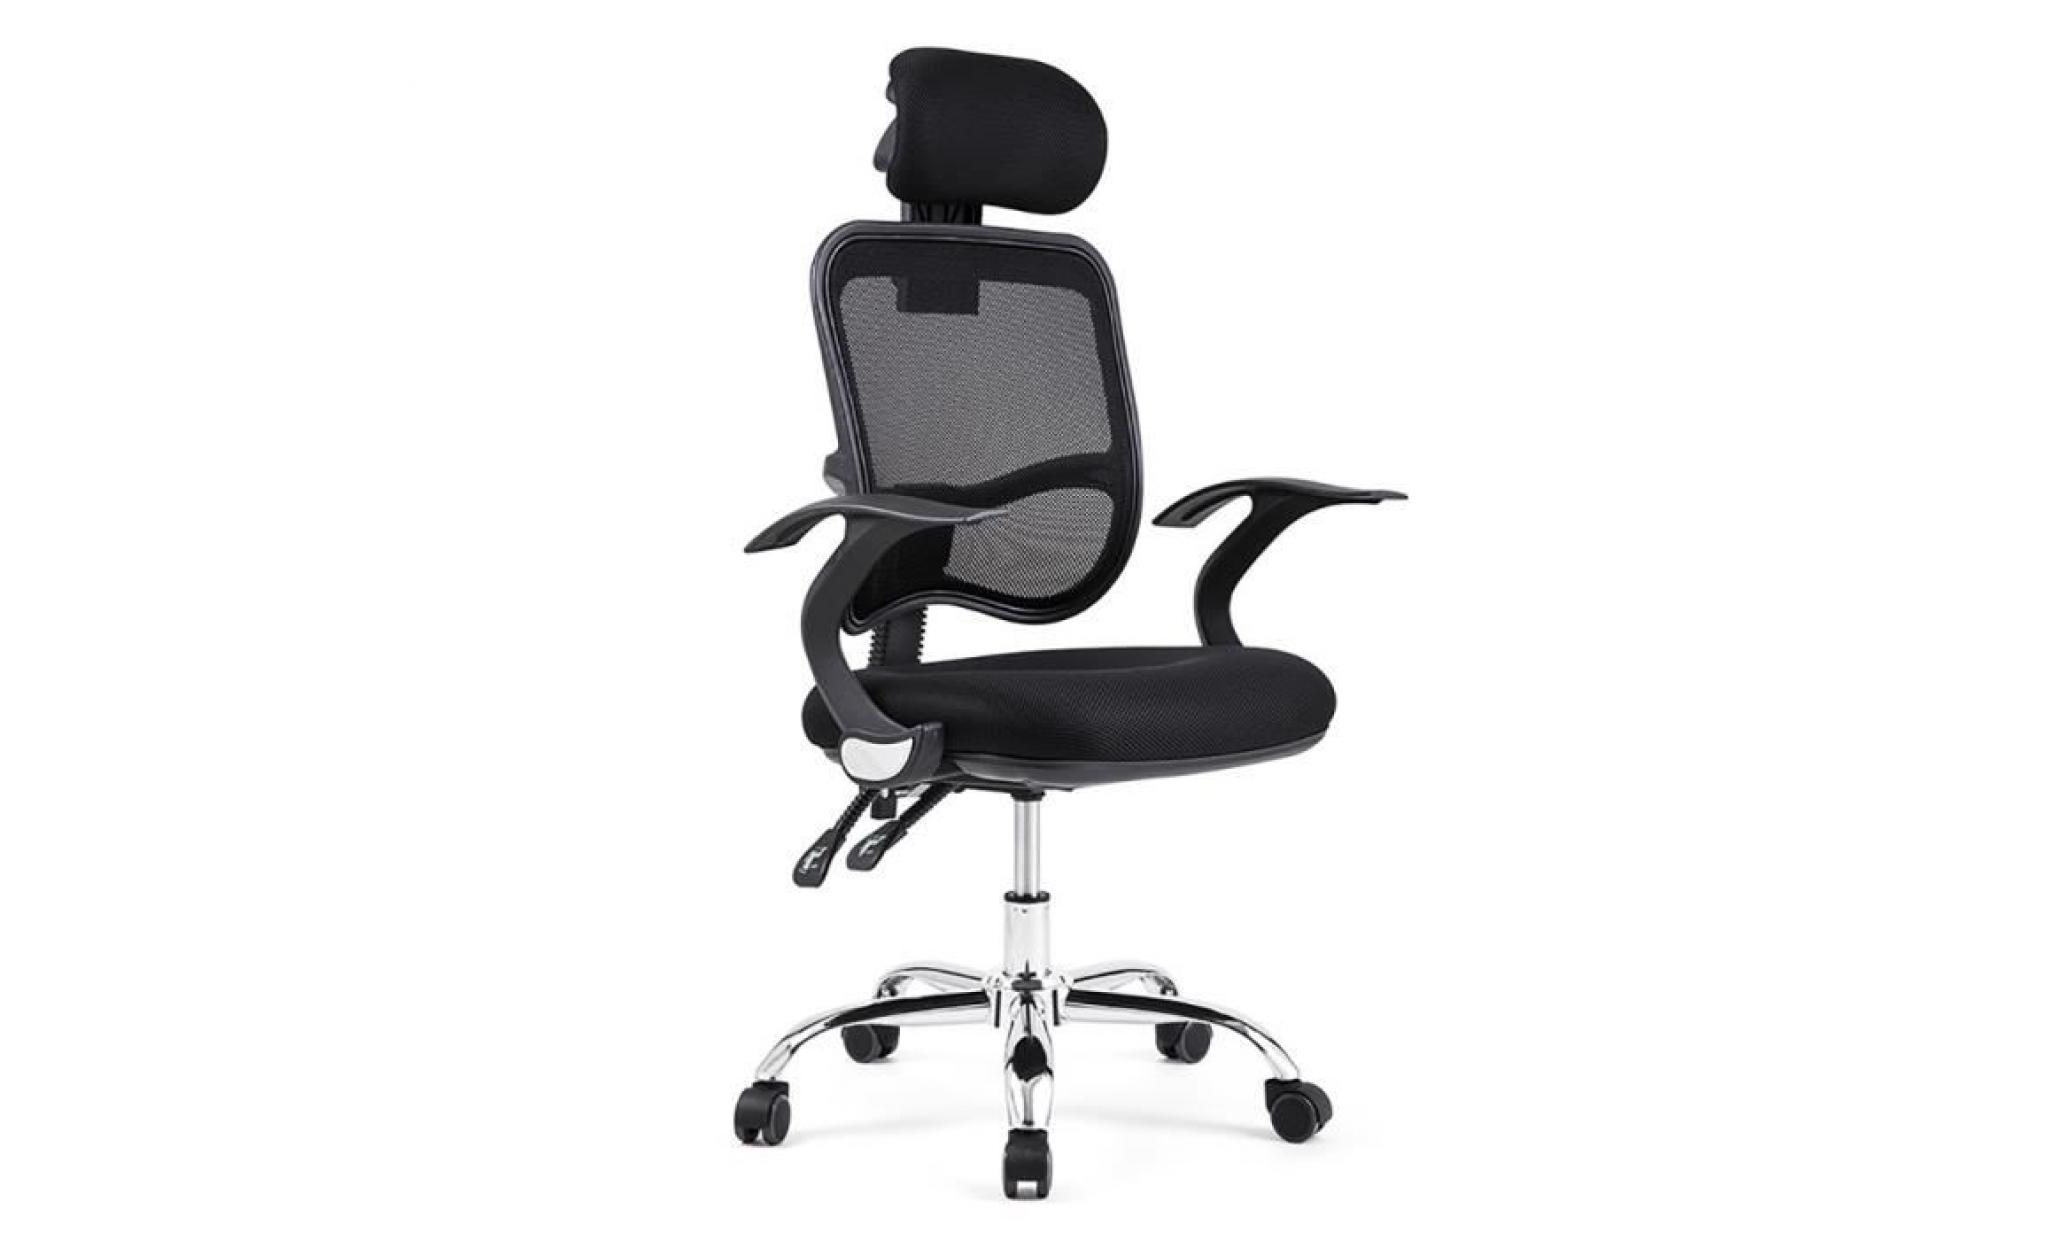 fauteuil de bureau chaise de bureau chaise bureau siege bureau fauteuil ordinateur livraison de france+manette poignée pour ps4 pas cher